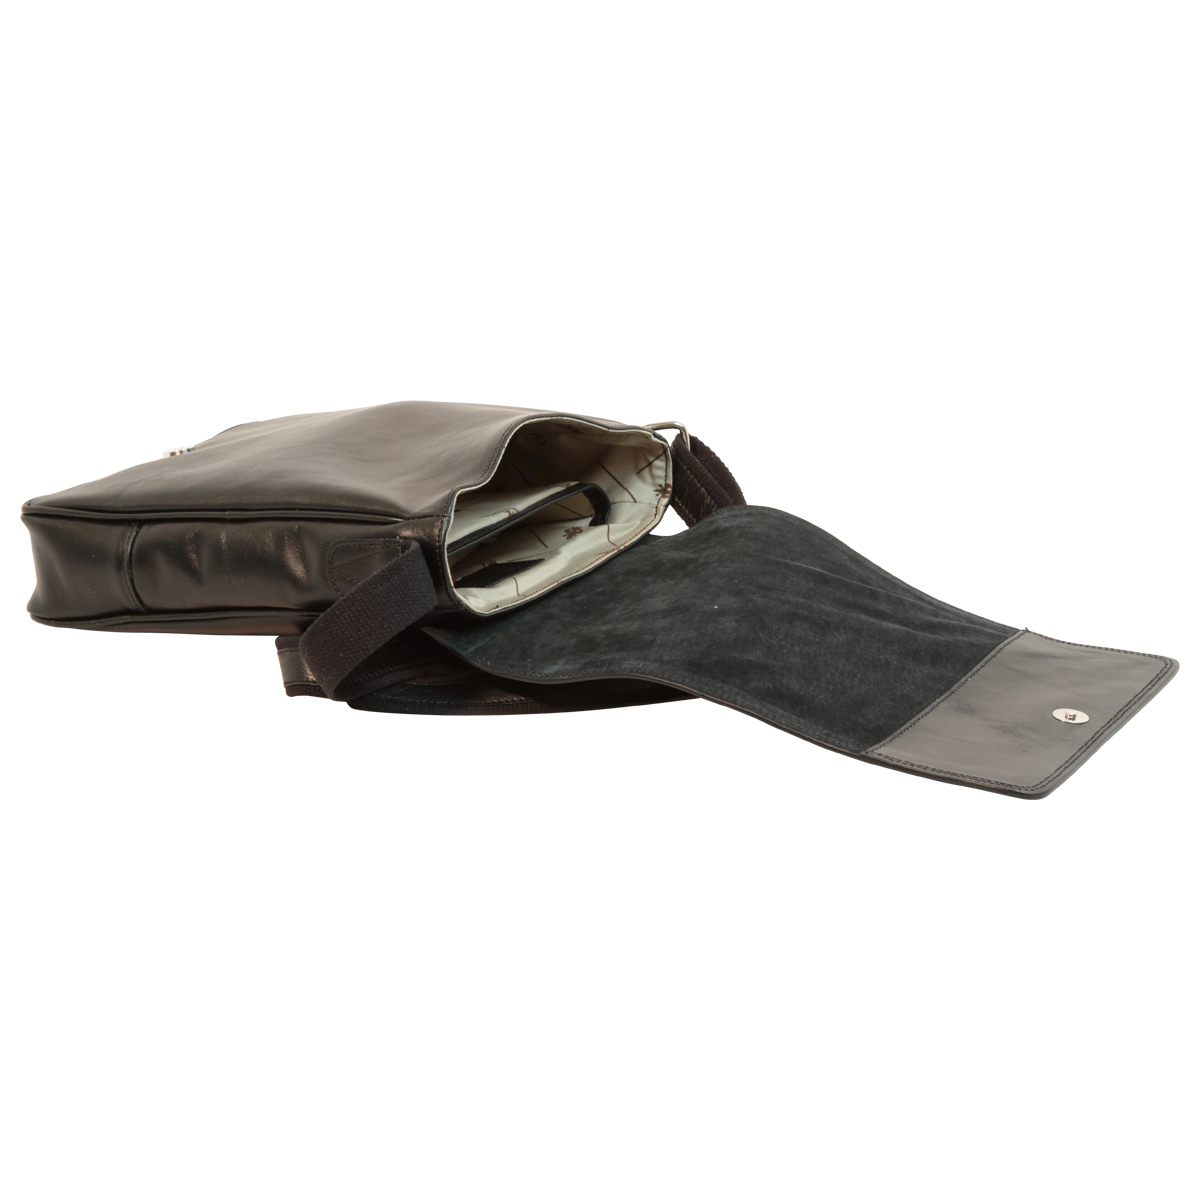 Leather Satchel Bag for I-Pad - Black | 087389NE | EURO | Old Angler Firenze